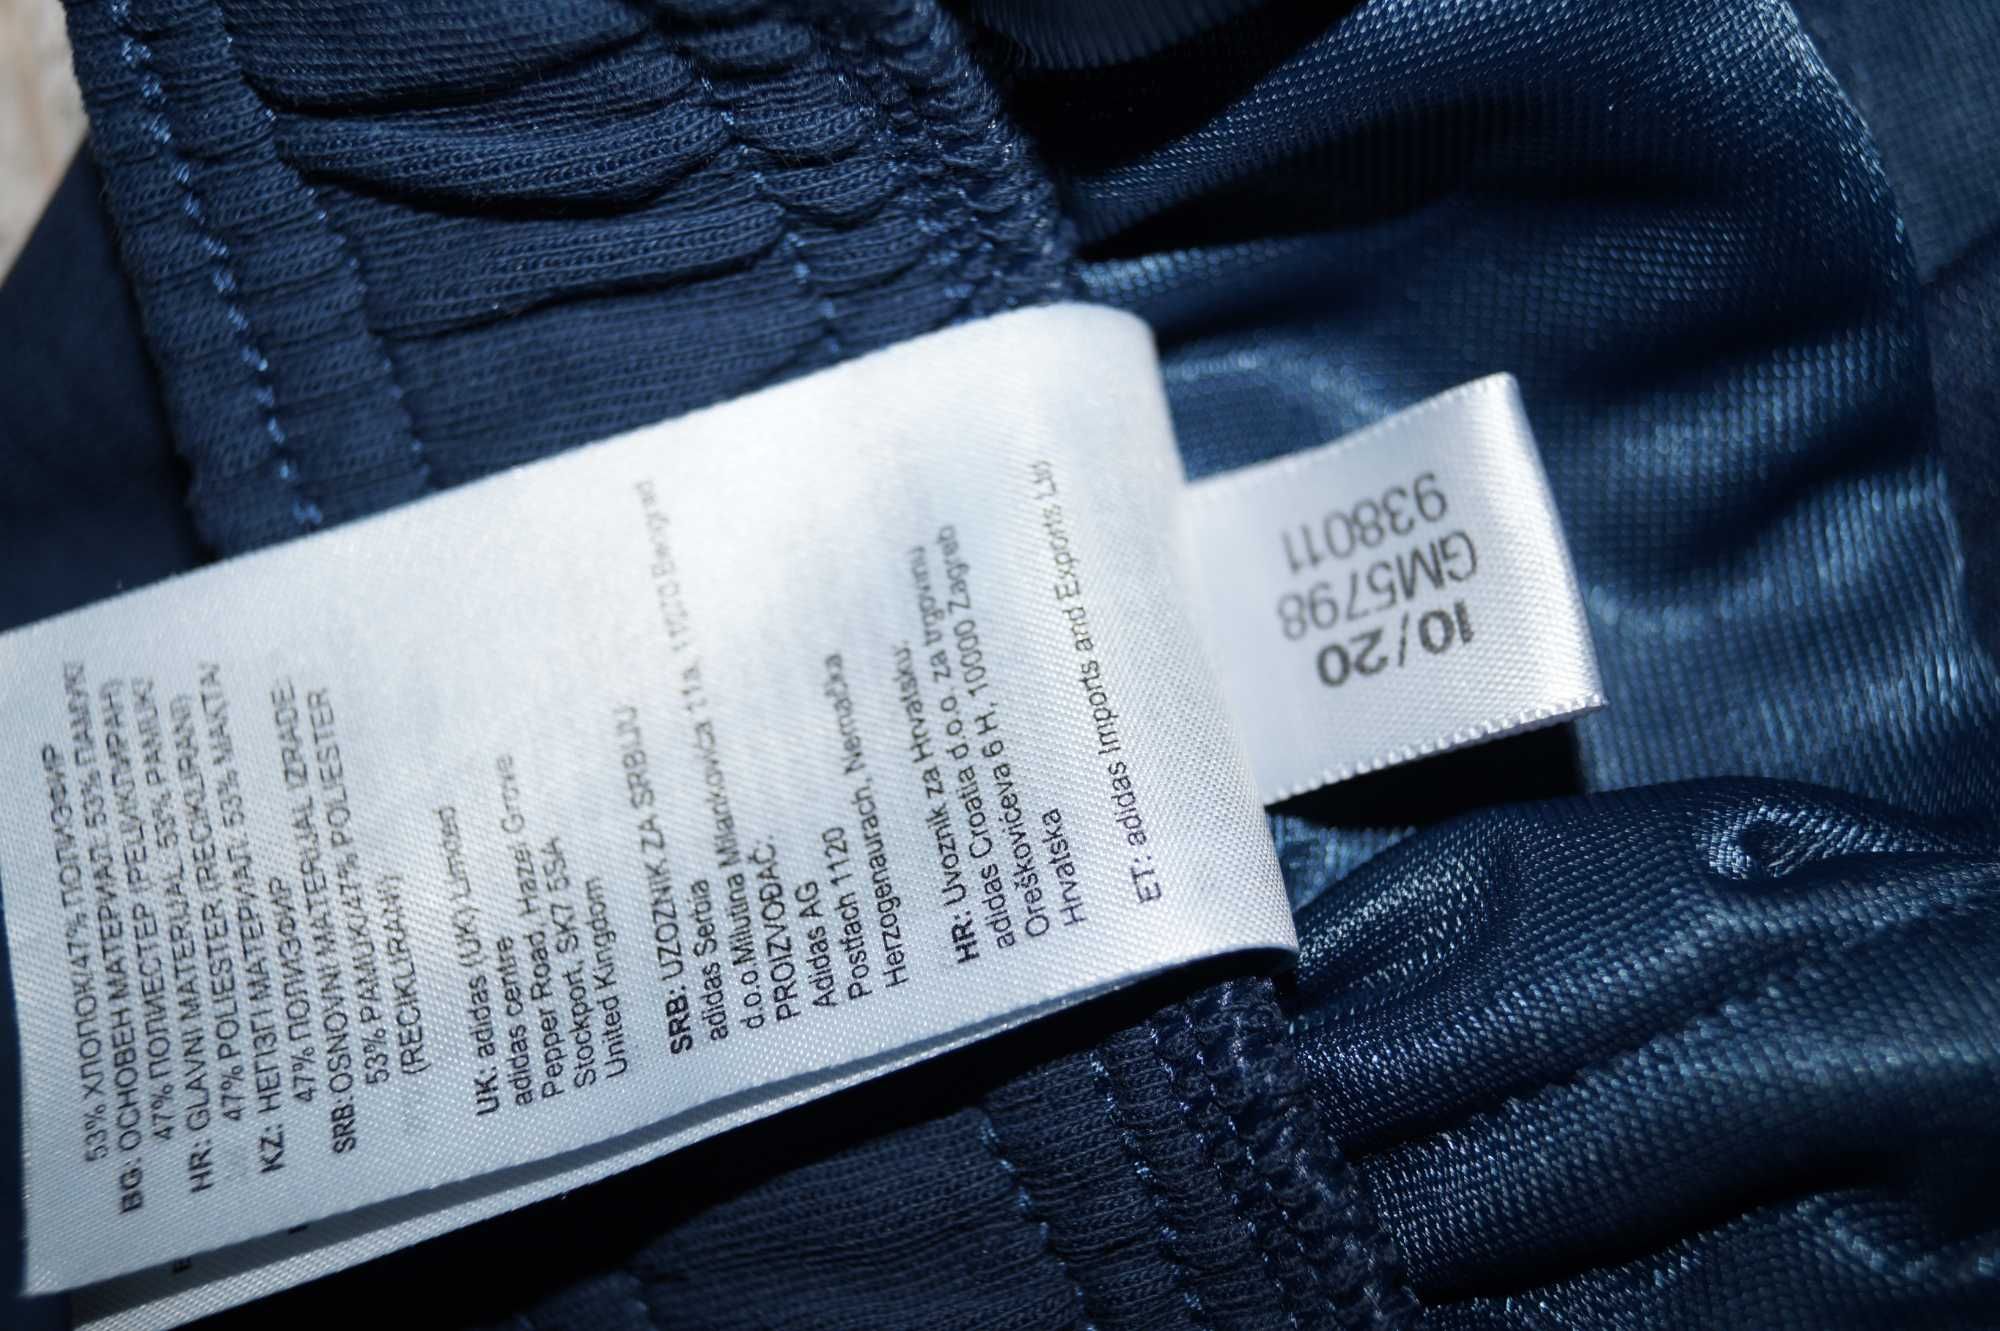 Męskie młodzieżowe spodnie dresowe Adidas r.ST